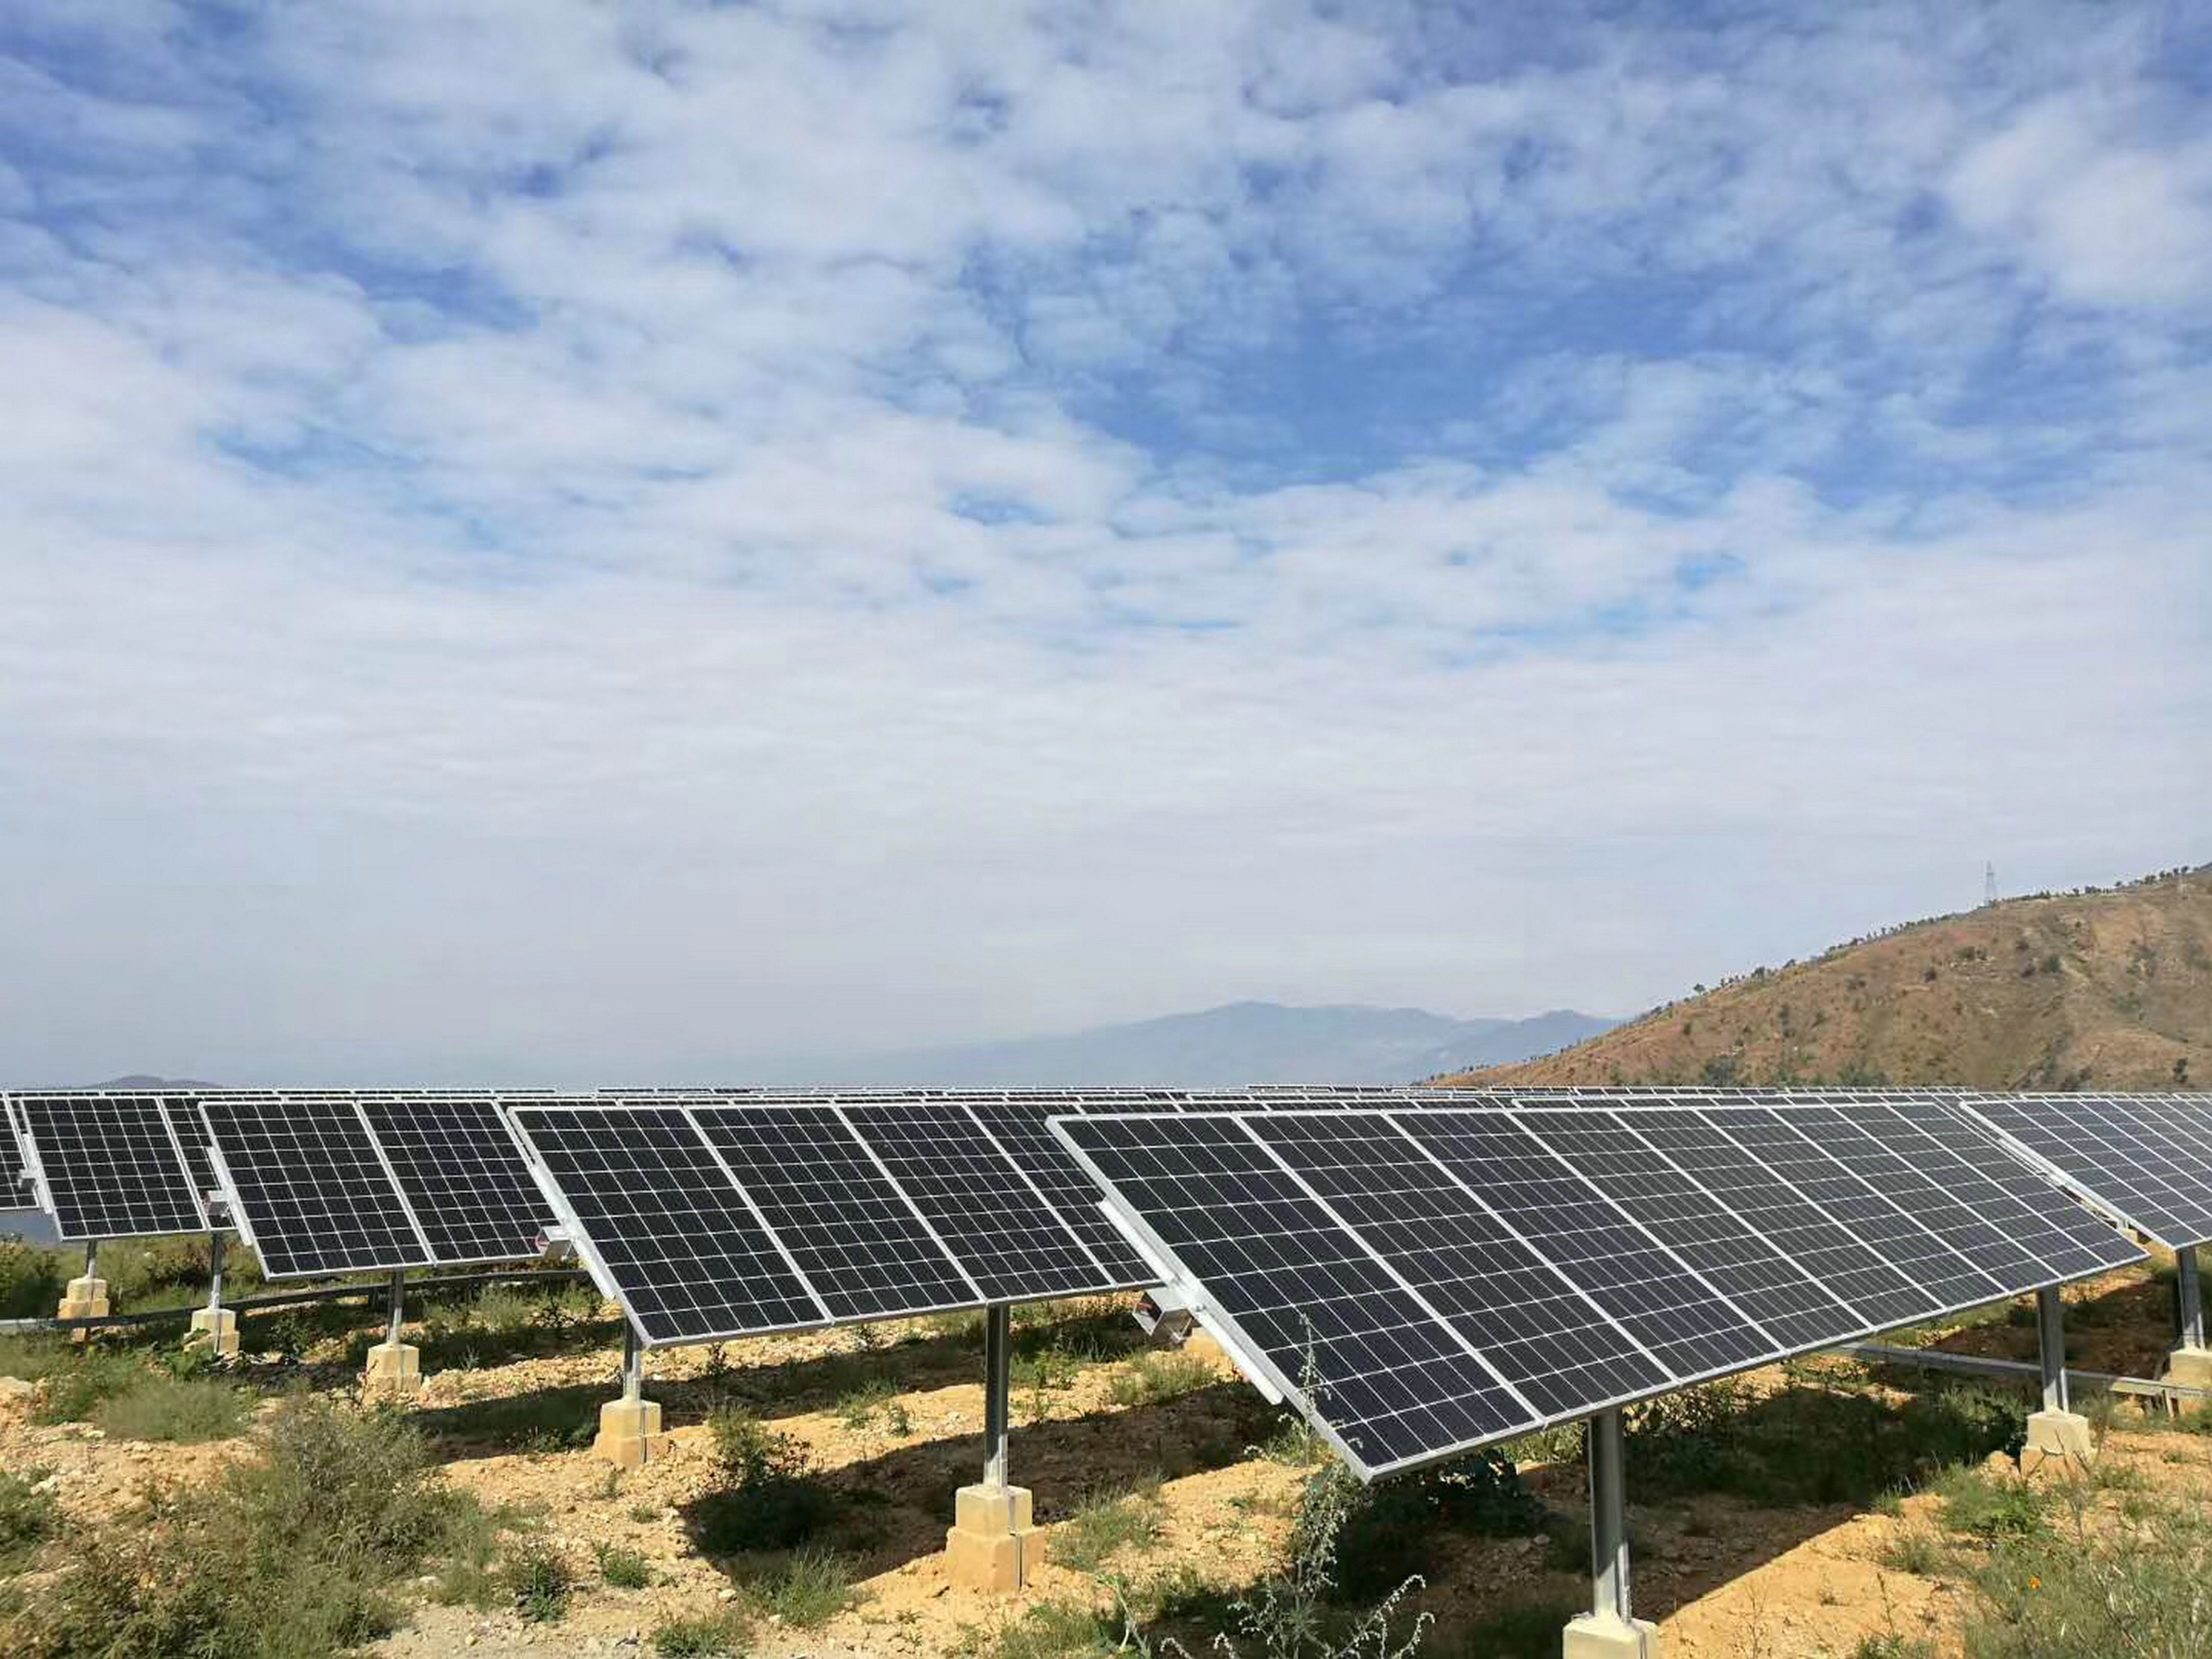 Komisi perdagangan internasional menawarkan tiga proposal untuk membatasi impor produk solar